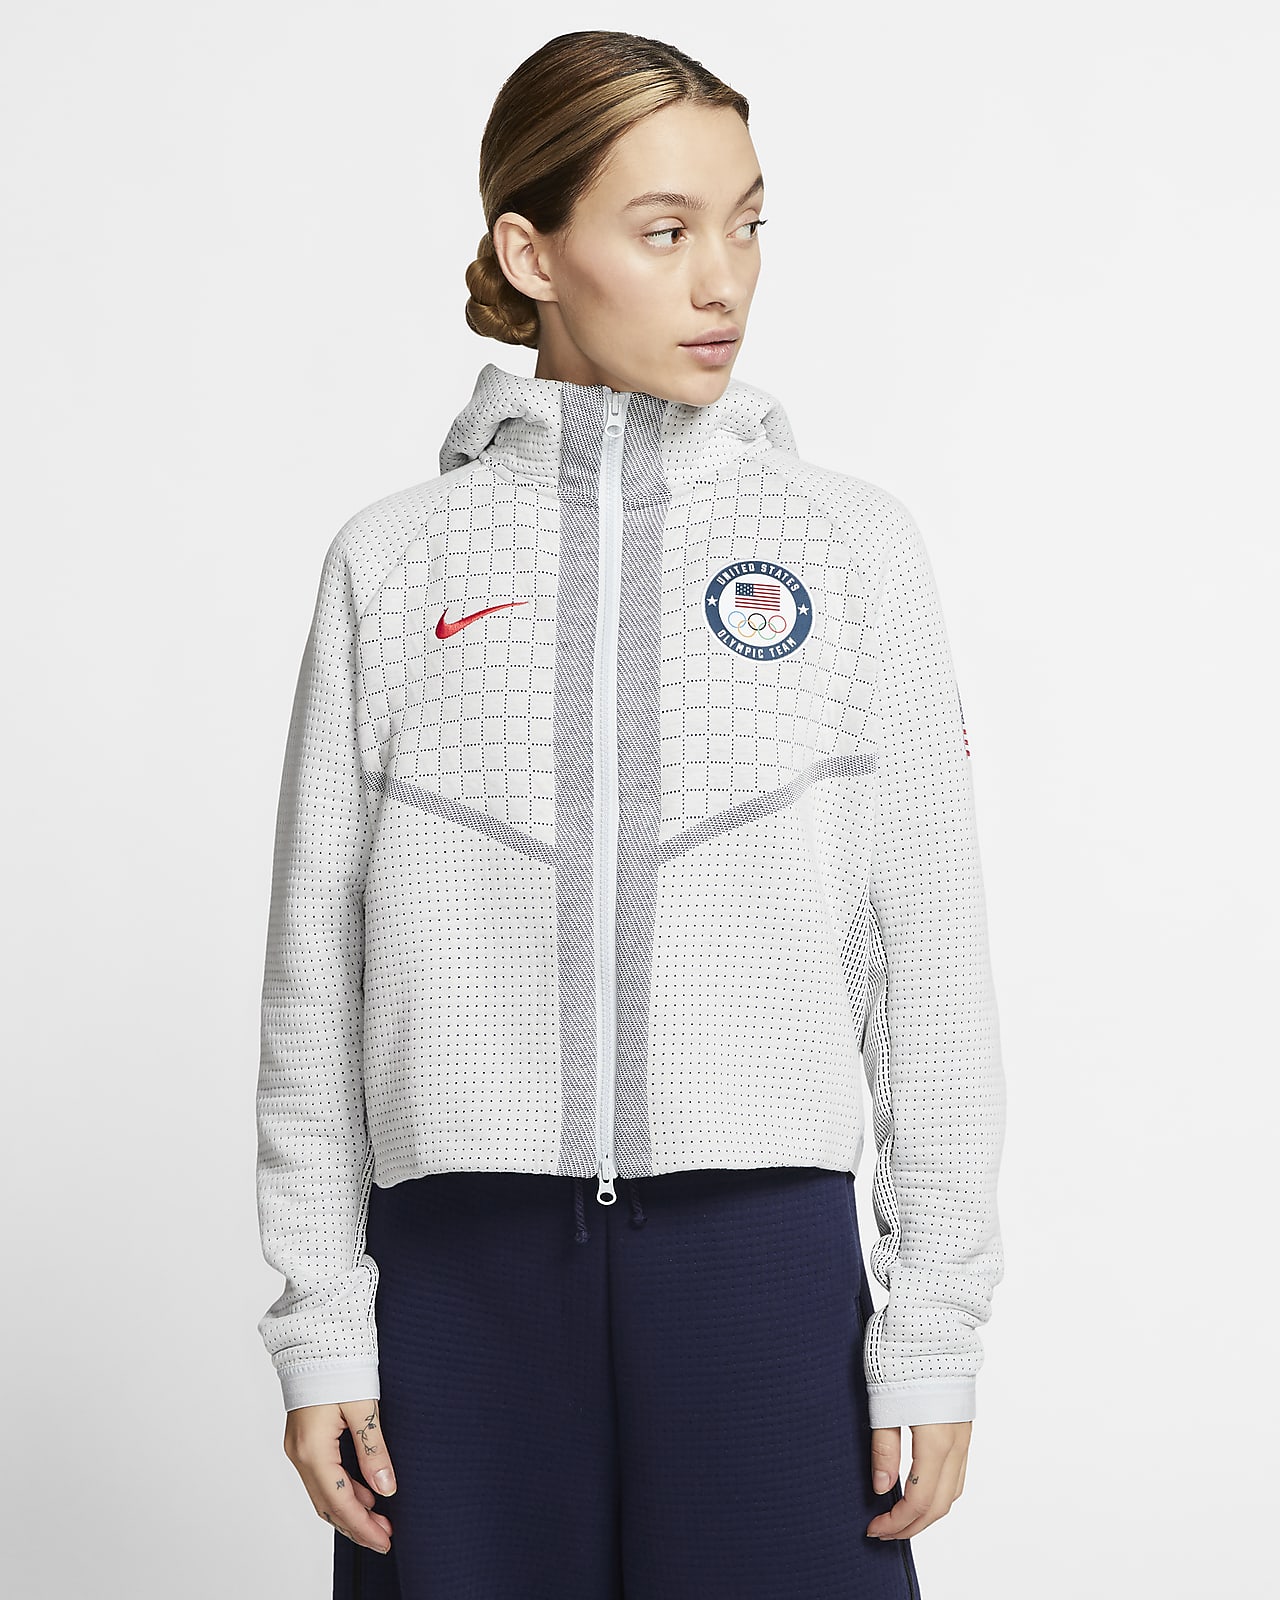 Sudadera con gorro de completo para mujer Nike Team USA. Nike.com